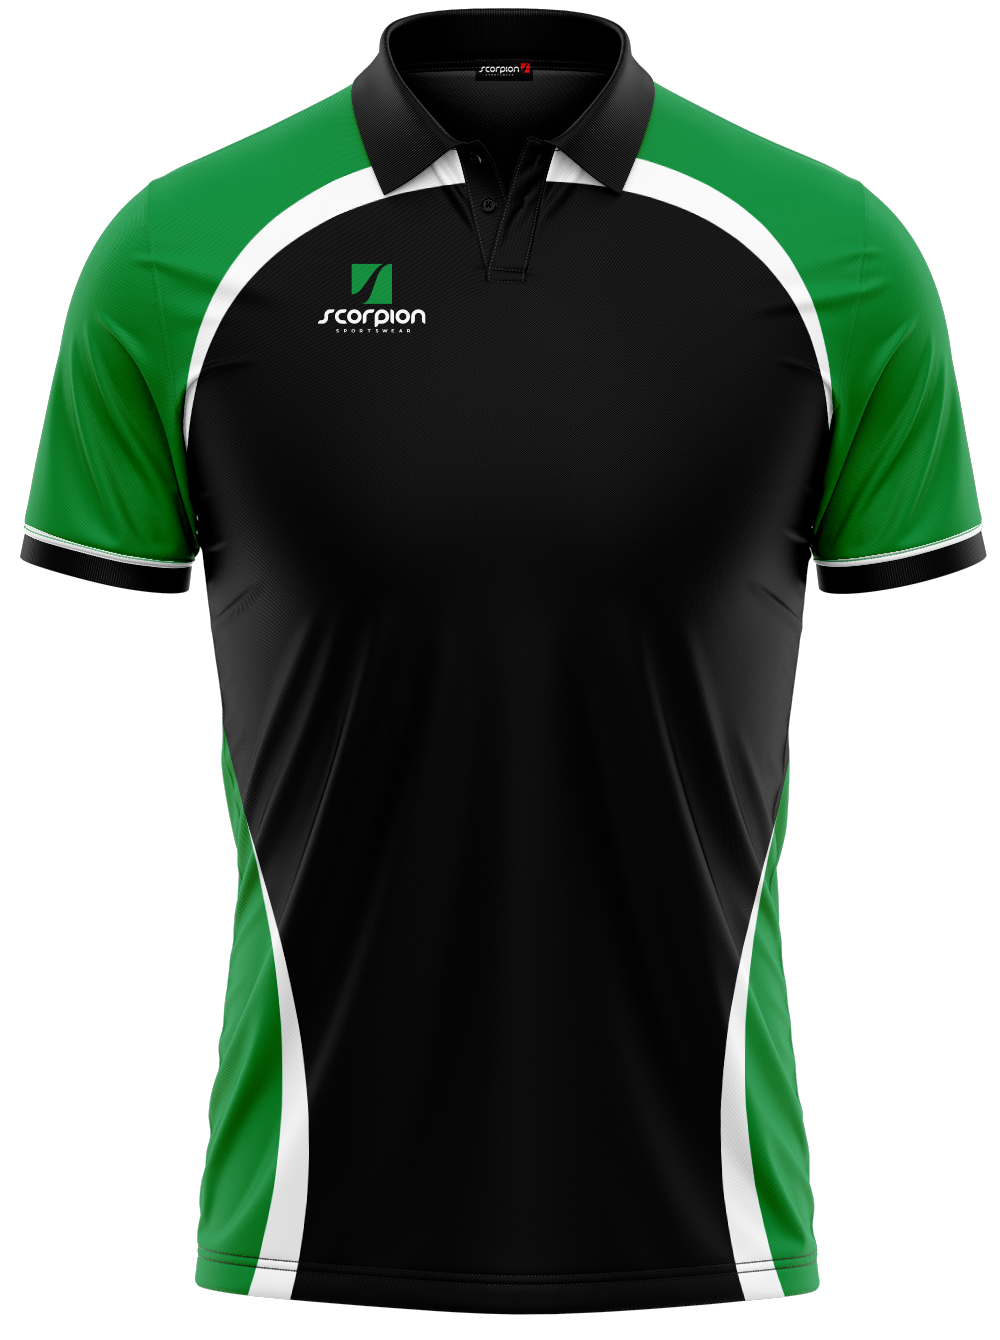 Scorpion Polo Shirts Pattern 2 - Black/Green/White